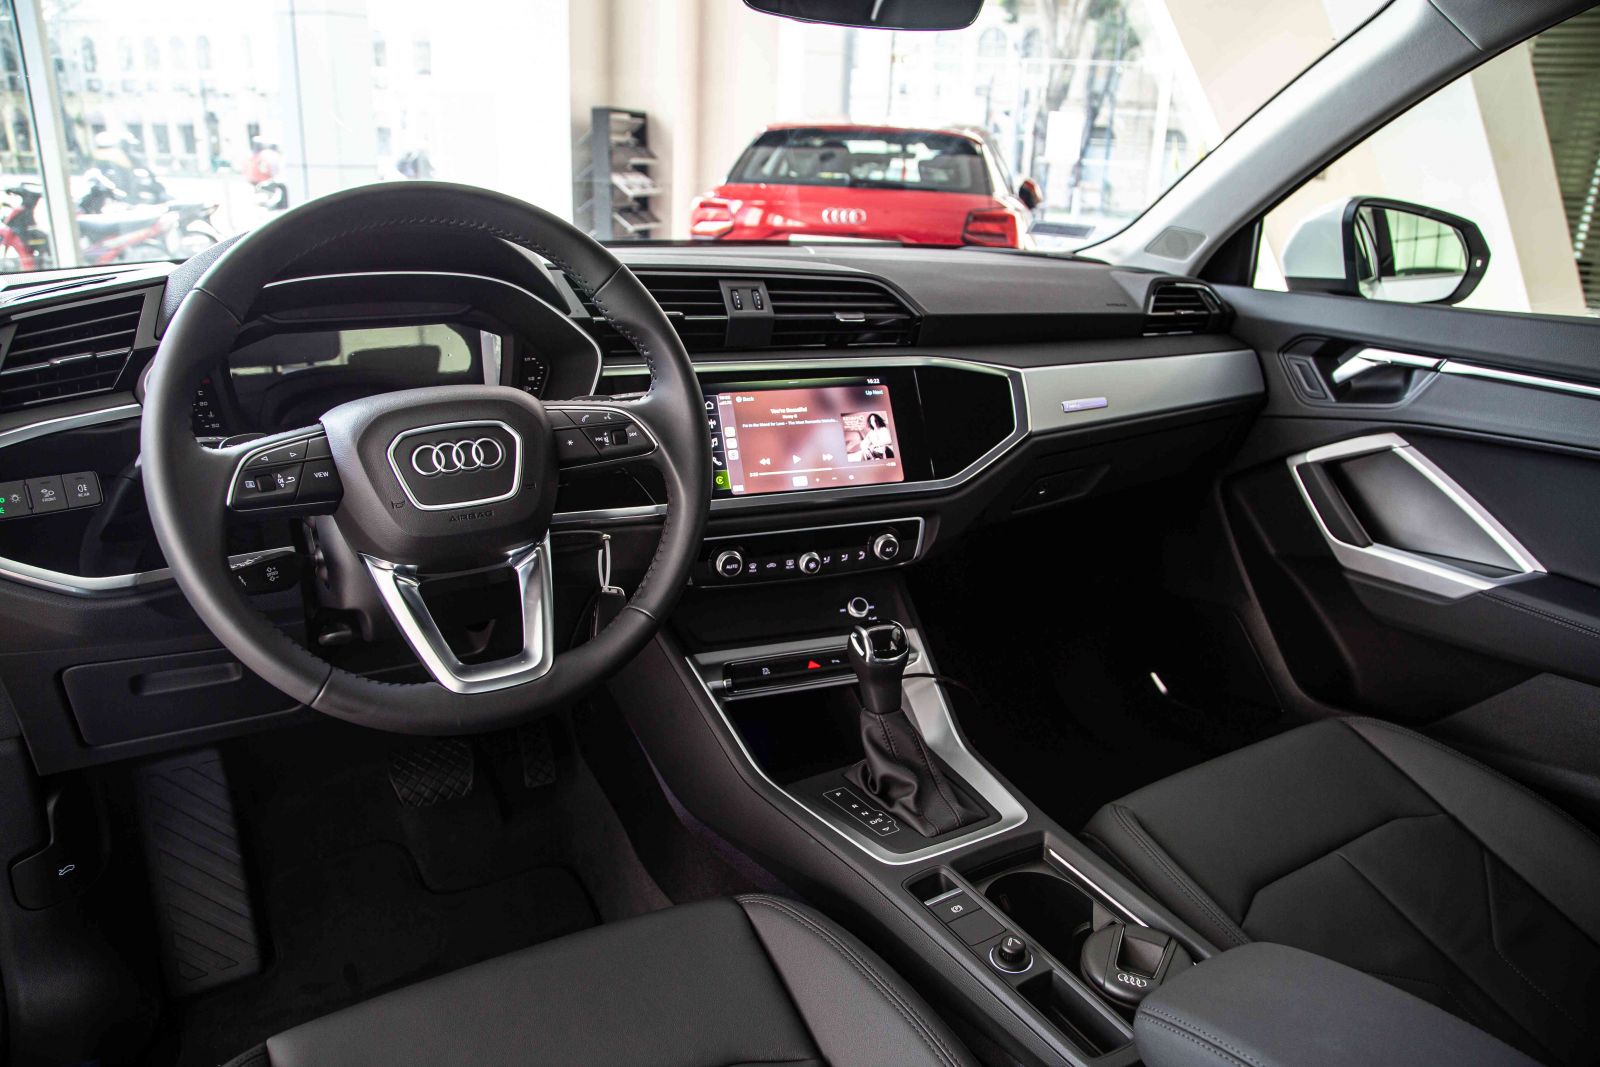 Khoang nội thất của Audi Q3 2023 được thiết kế theo phong cách tối giản nhưng vẫn toát lên vẻ đẳng cấp, sang trọng